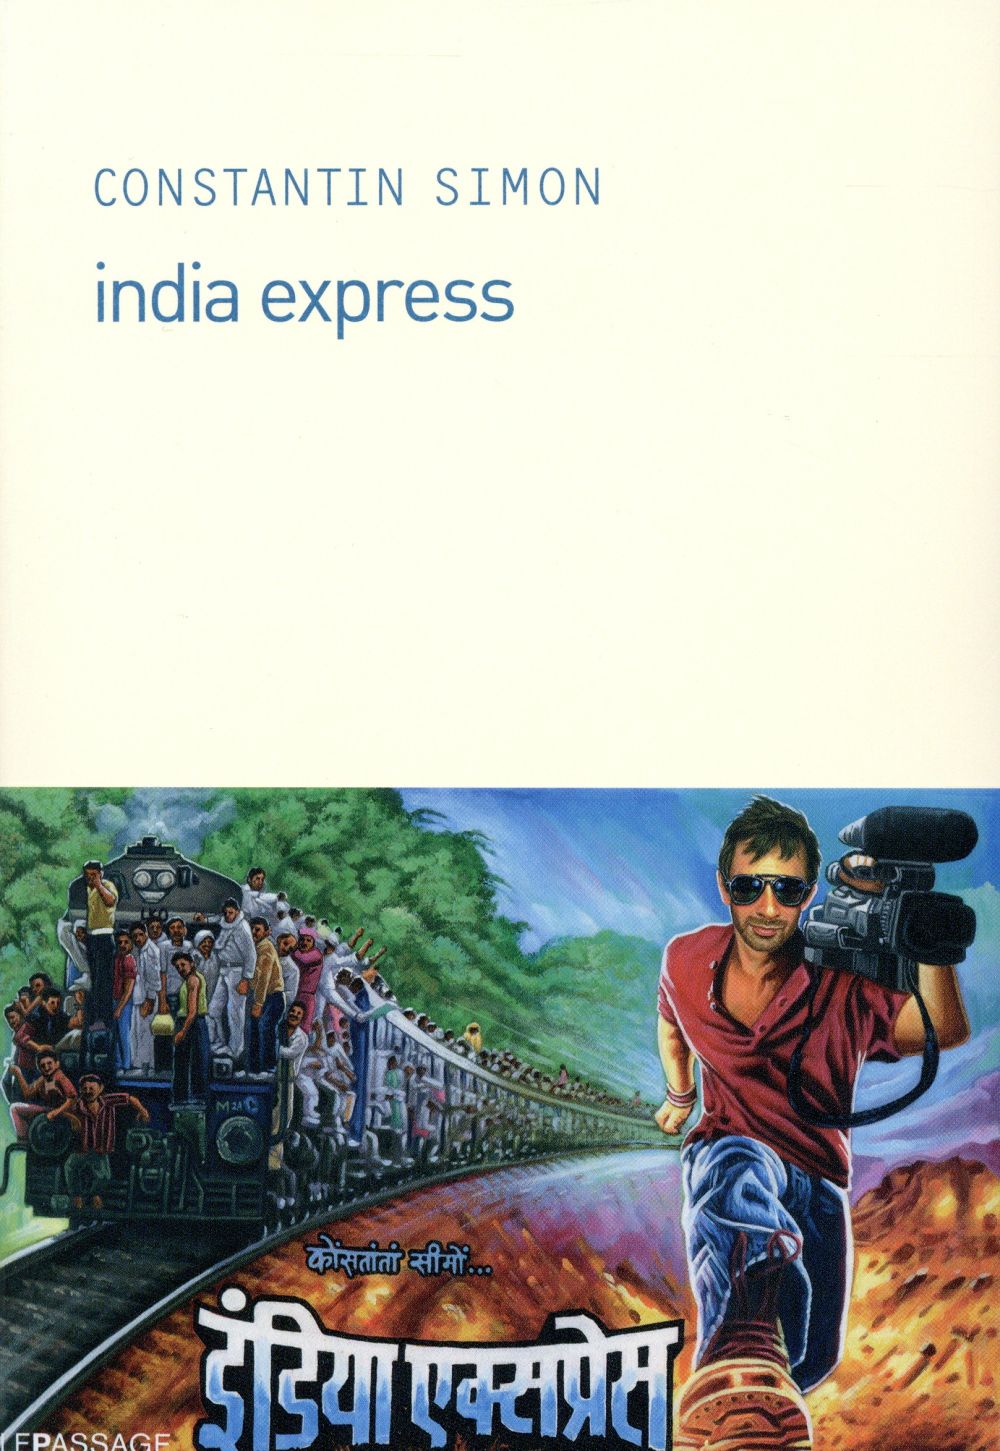 La chronique #7 du Club des Explorateurs : "India Express" de Constantin Simon